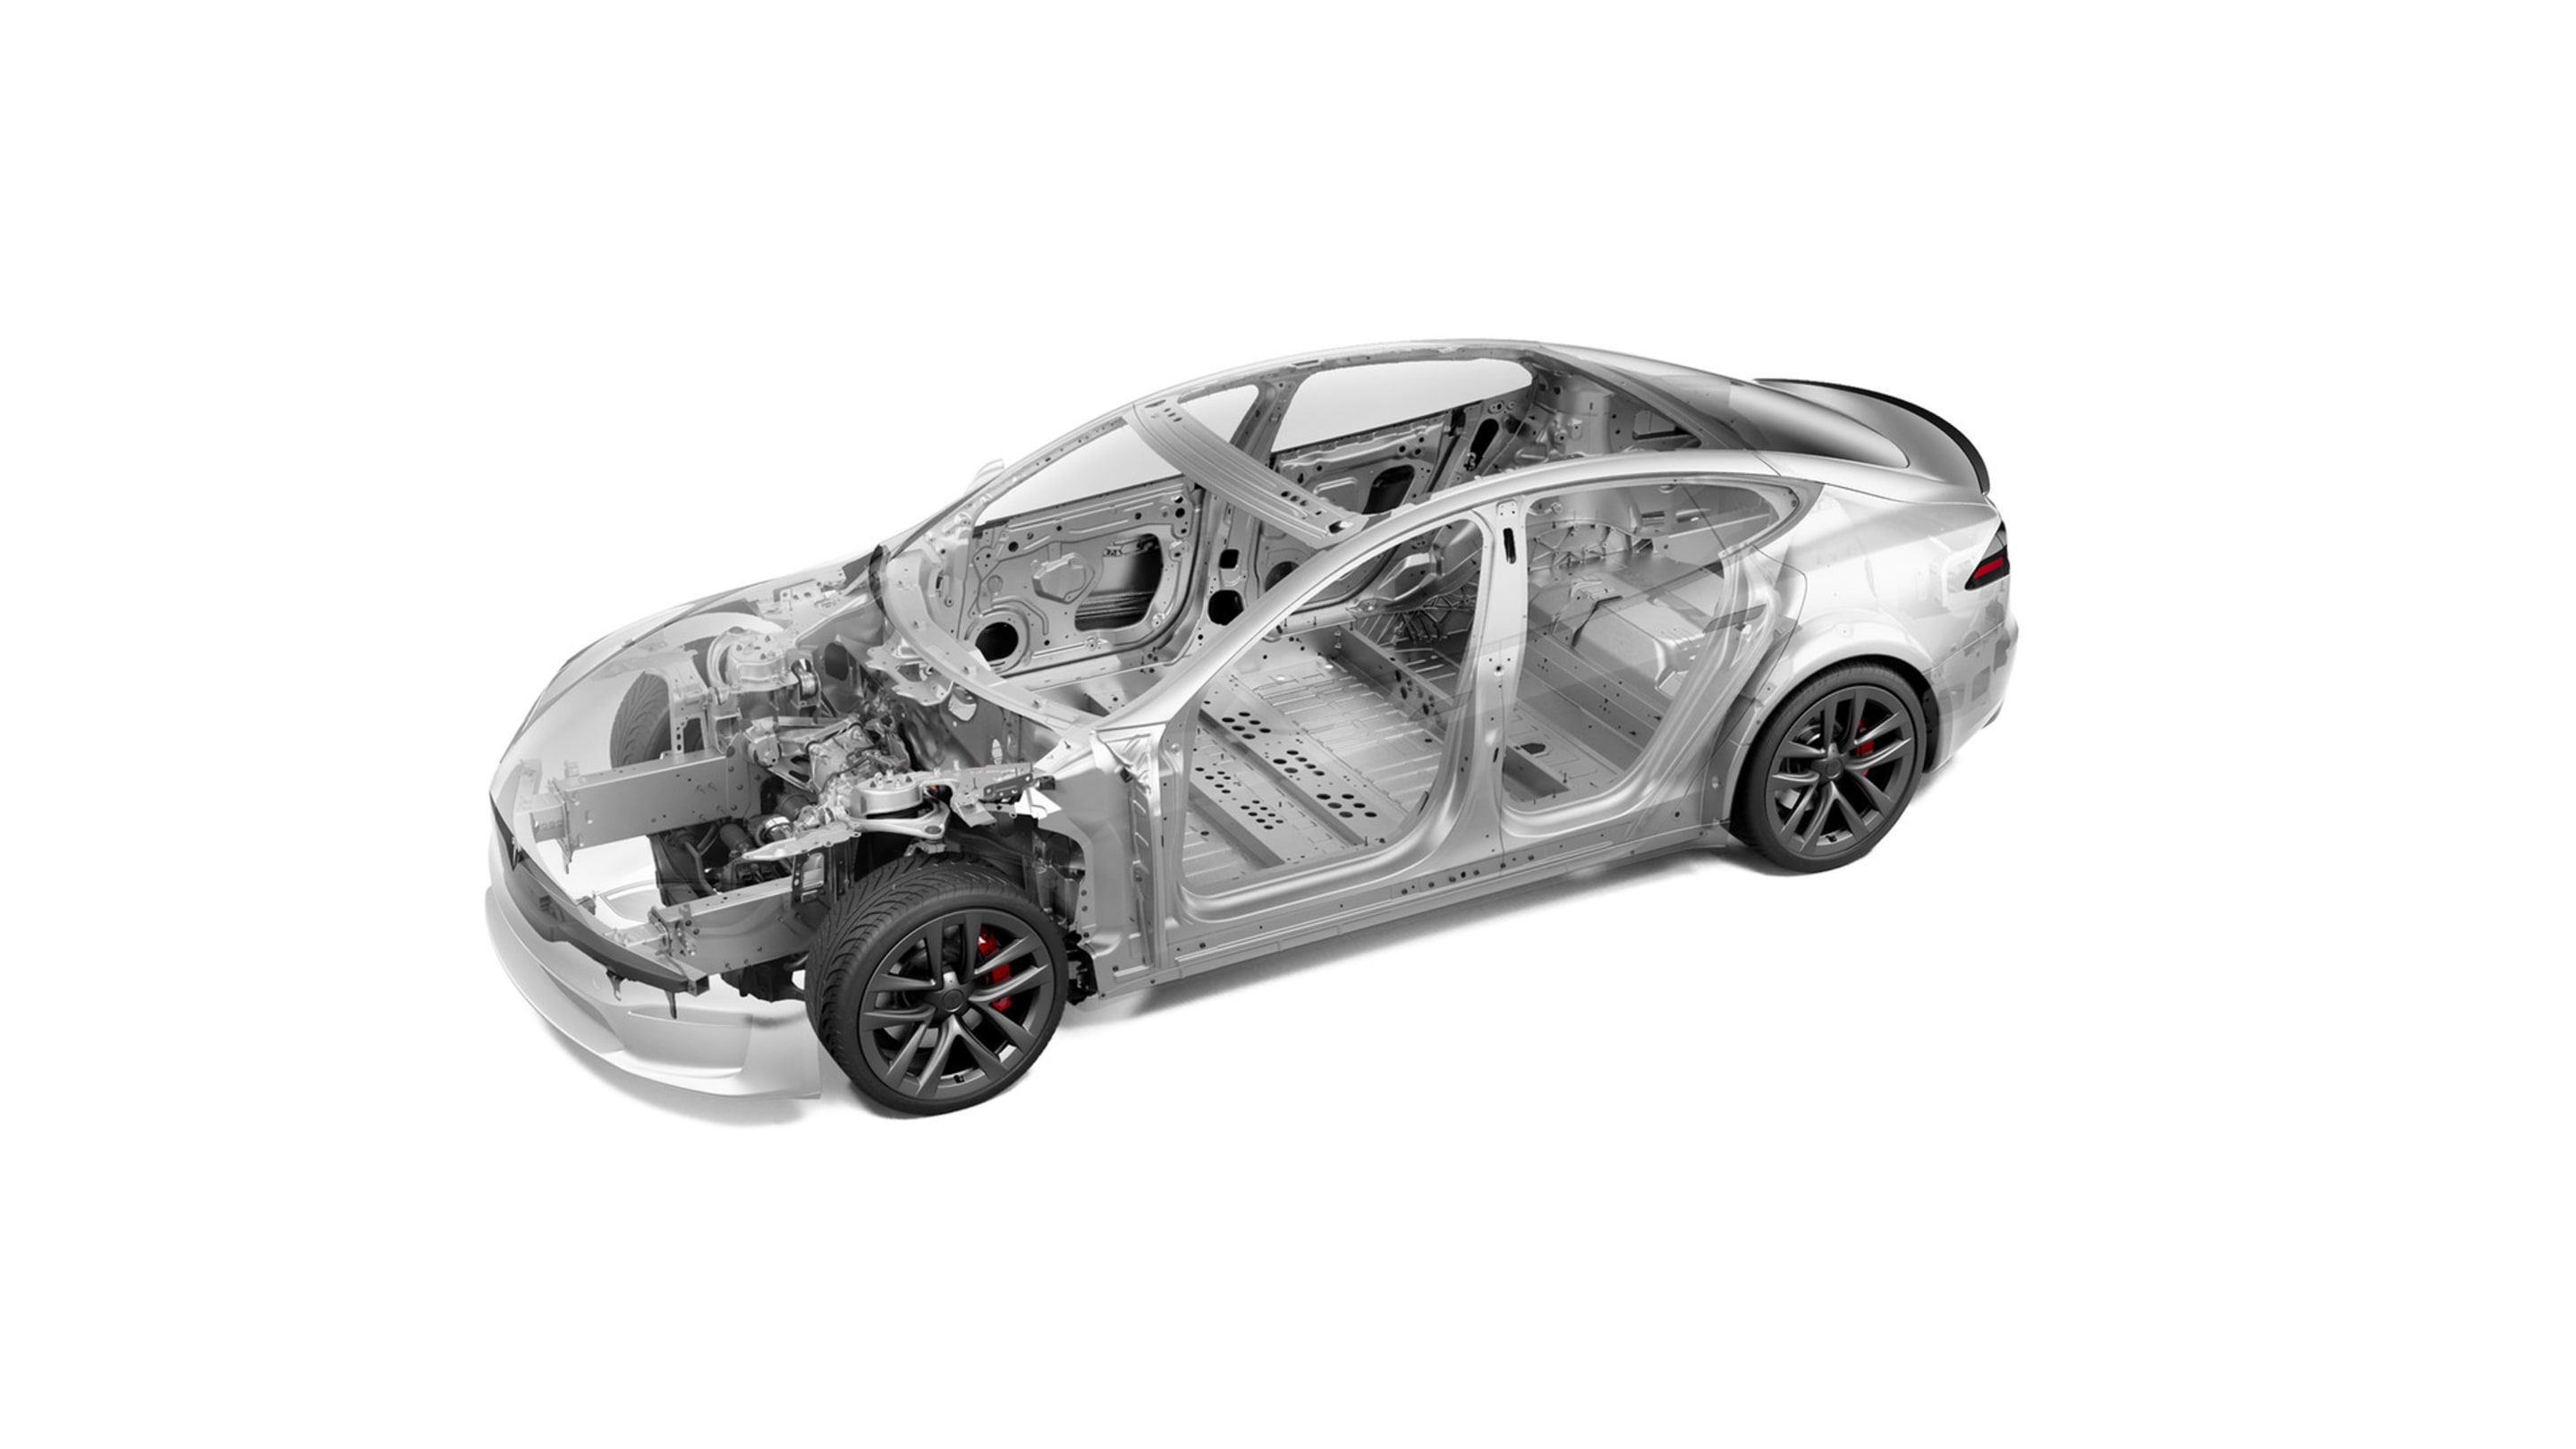 Wizualizacja funkcji bezpieczeństwa podwozia pojazdu Model S Plaid z czarnymi 21-calowymi felgami